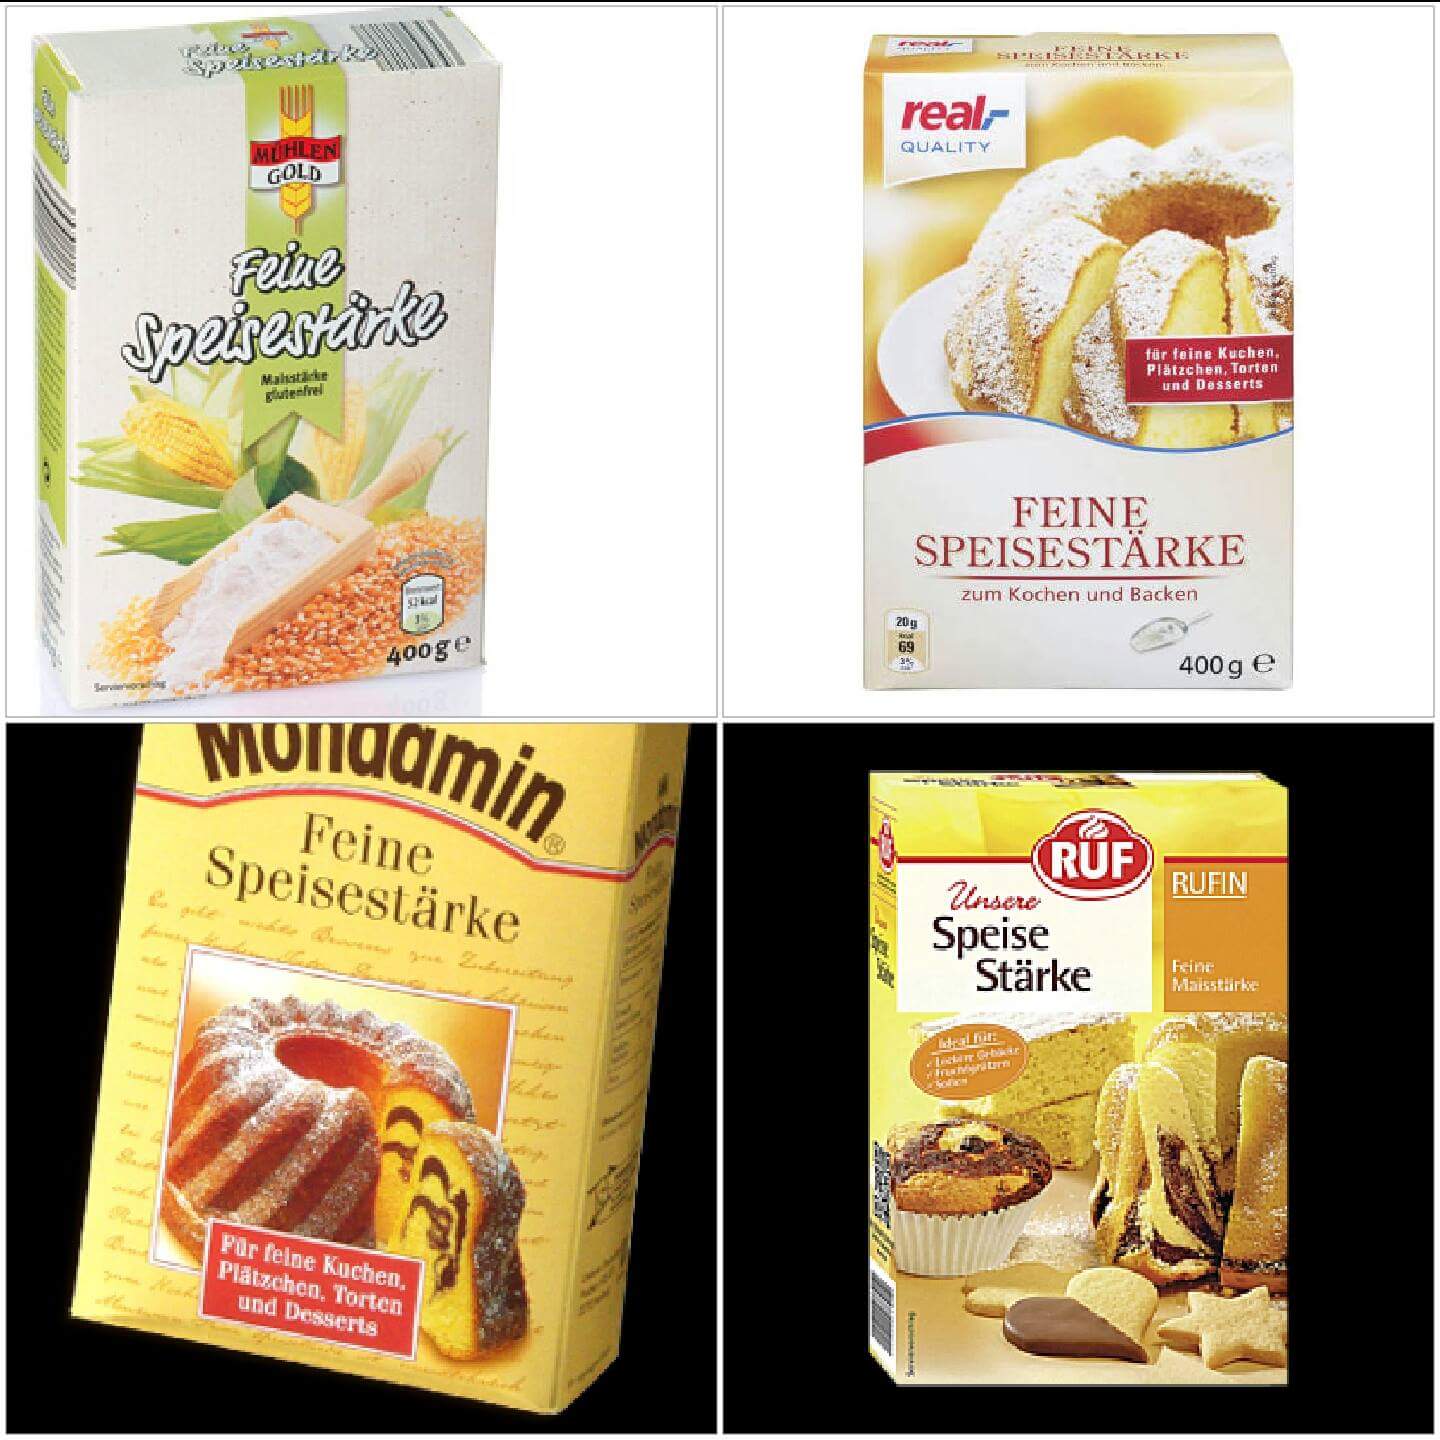 Γερμανικά μαγειρικά προϊόντα - Αντιστοιχία με τα ελληνικά (εικόνες)